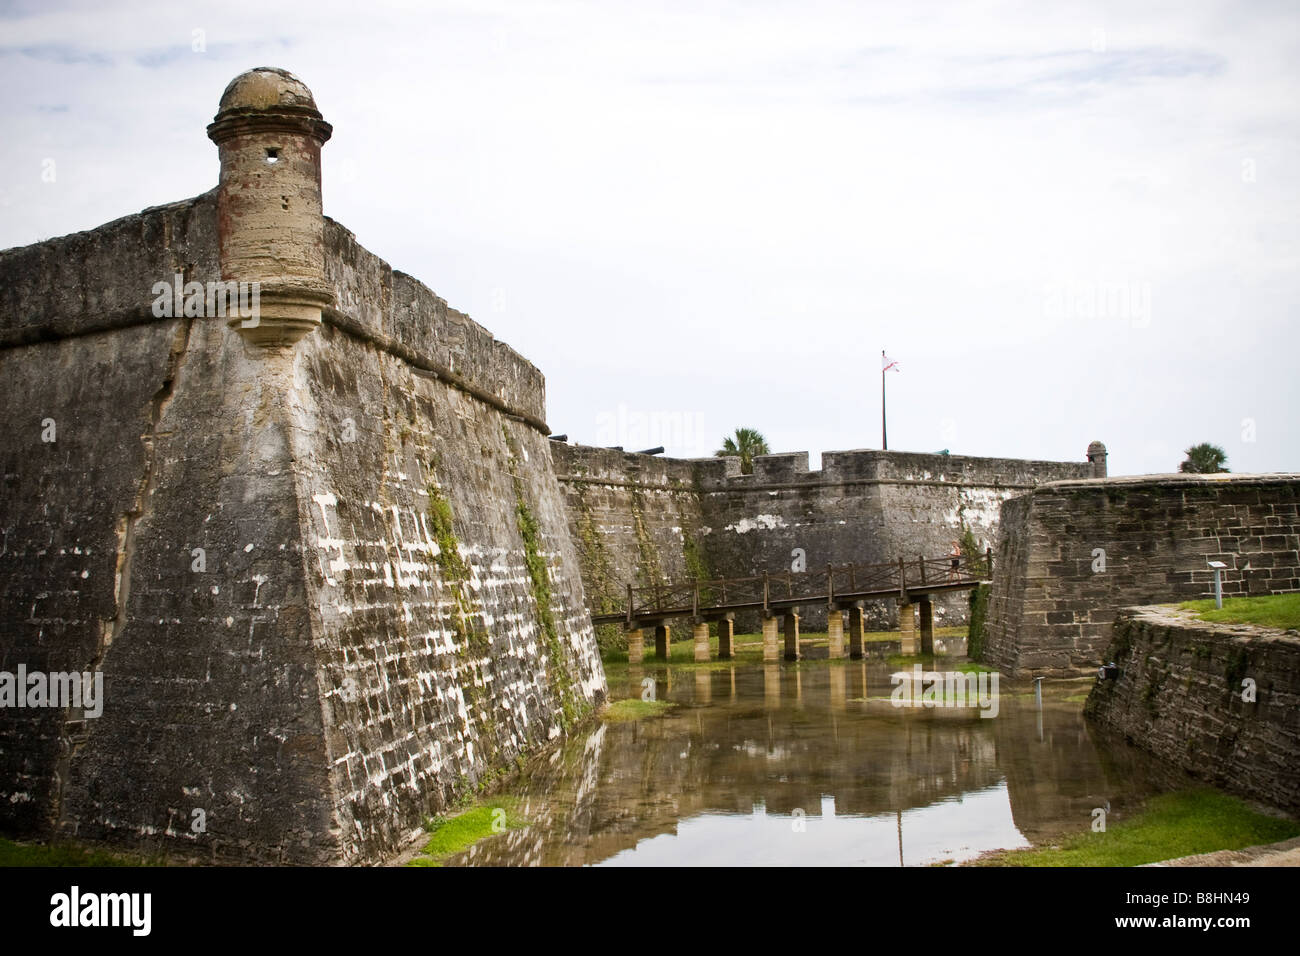 Exterieur des Castillo de San Marcos in St. Augustine. Spanische Schloss und älteste Mauerwerk 17. Jahrhundert Fort in Nordamerika. Stockfoto